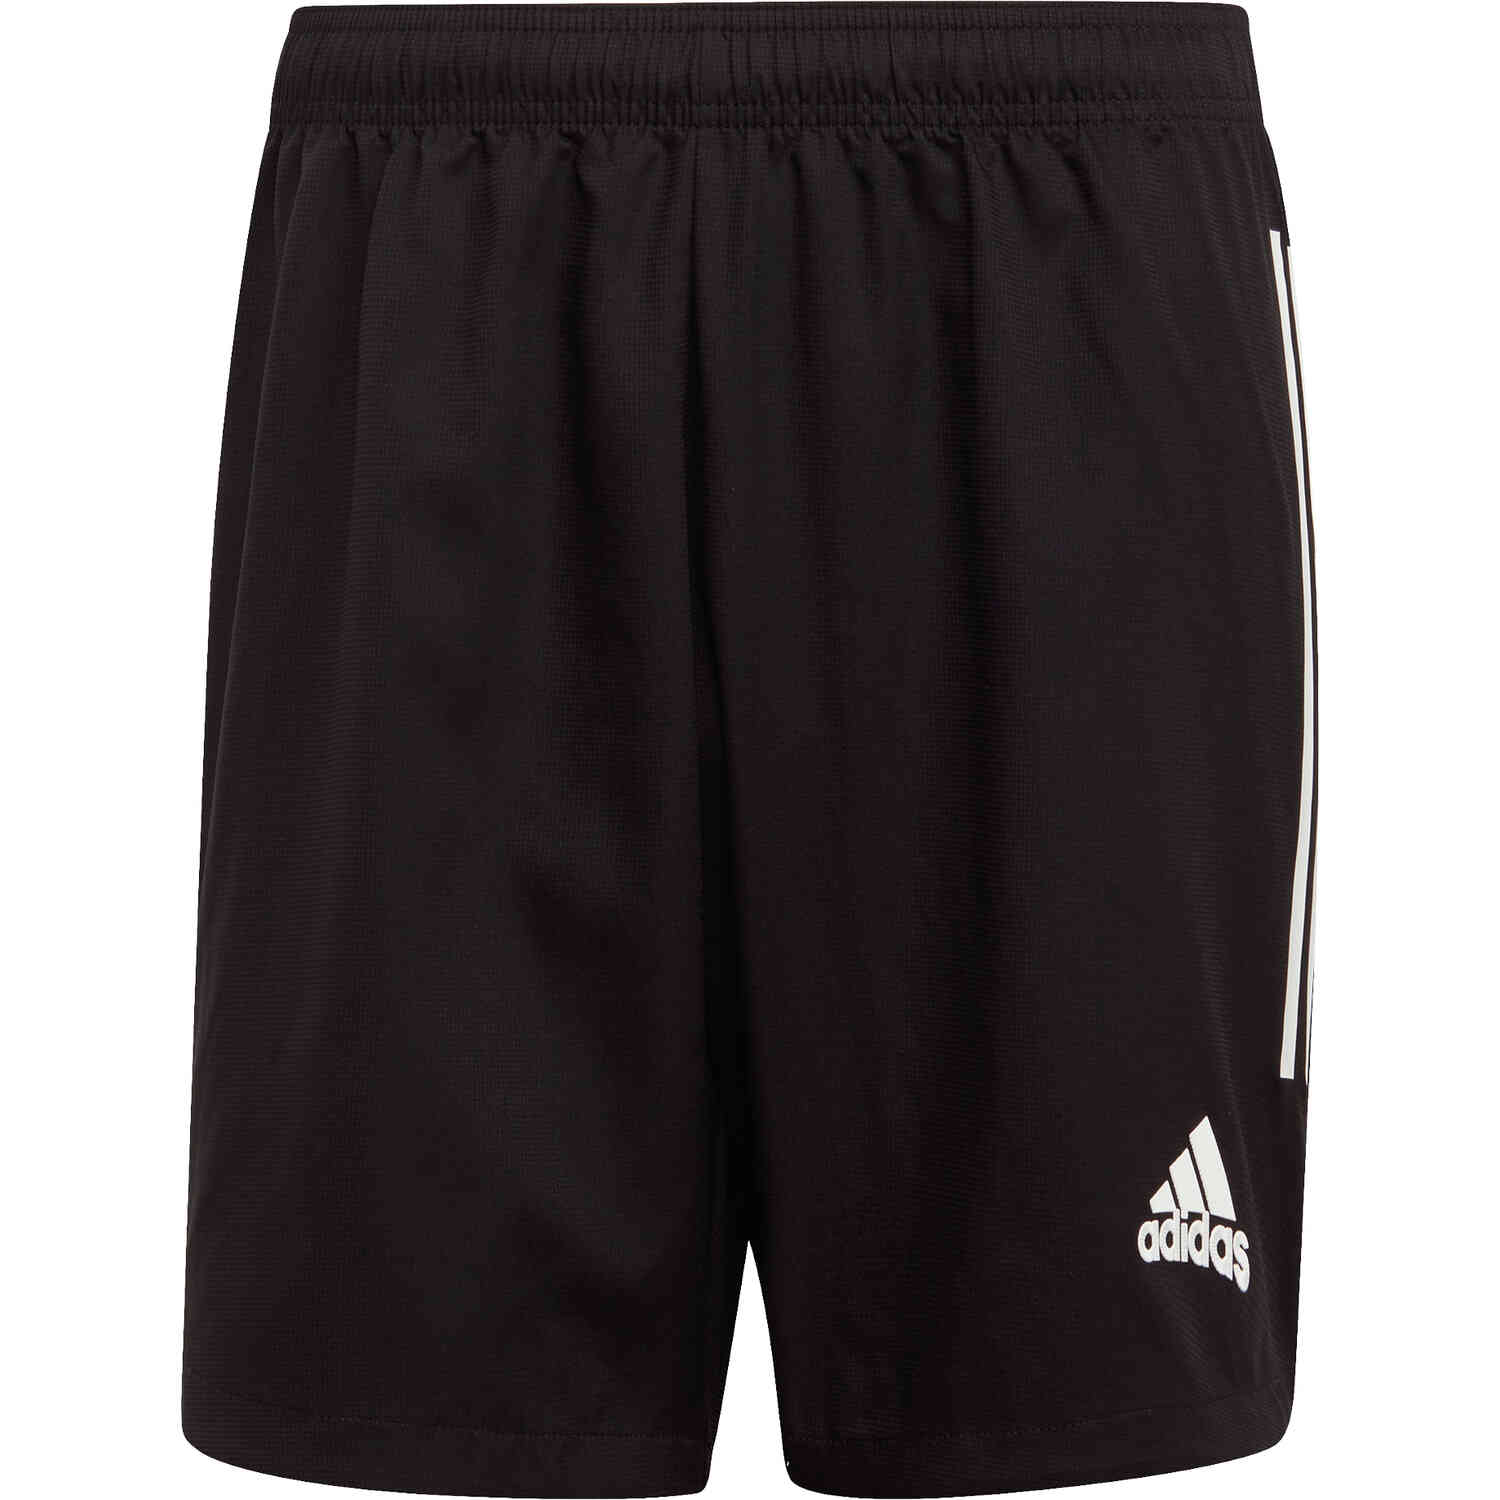 adidas active shorts